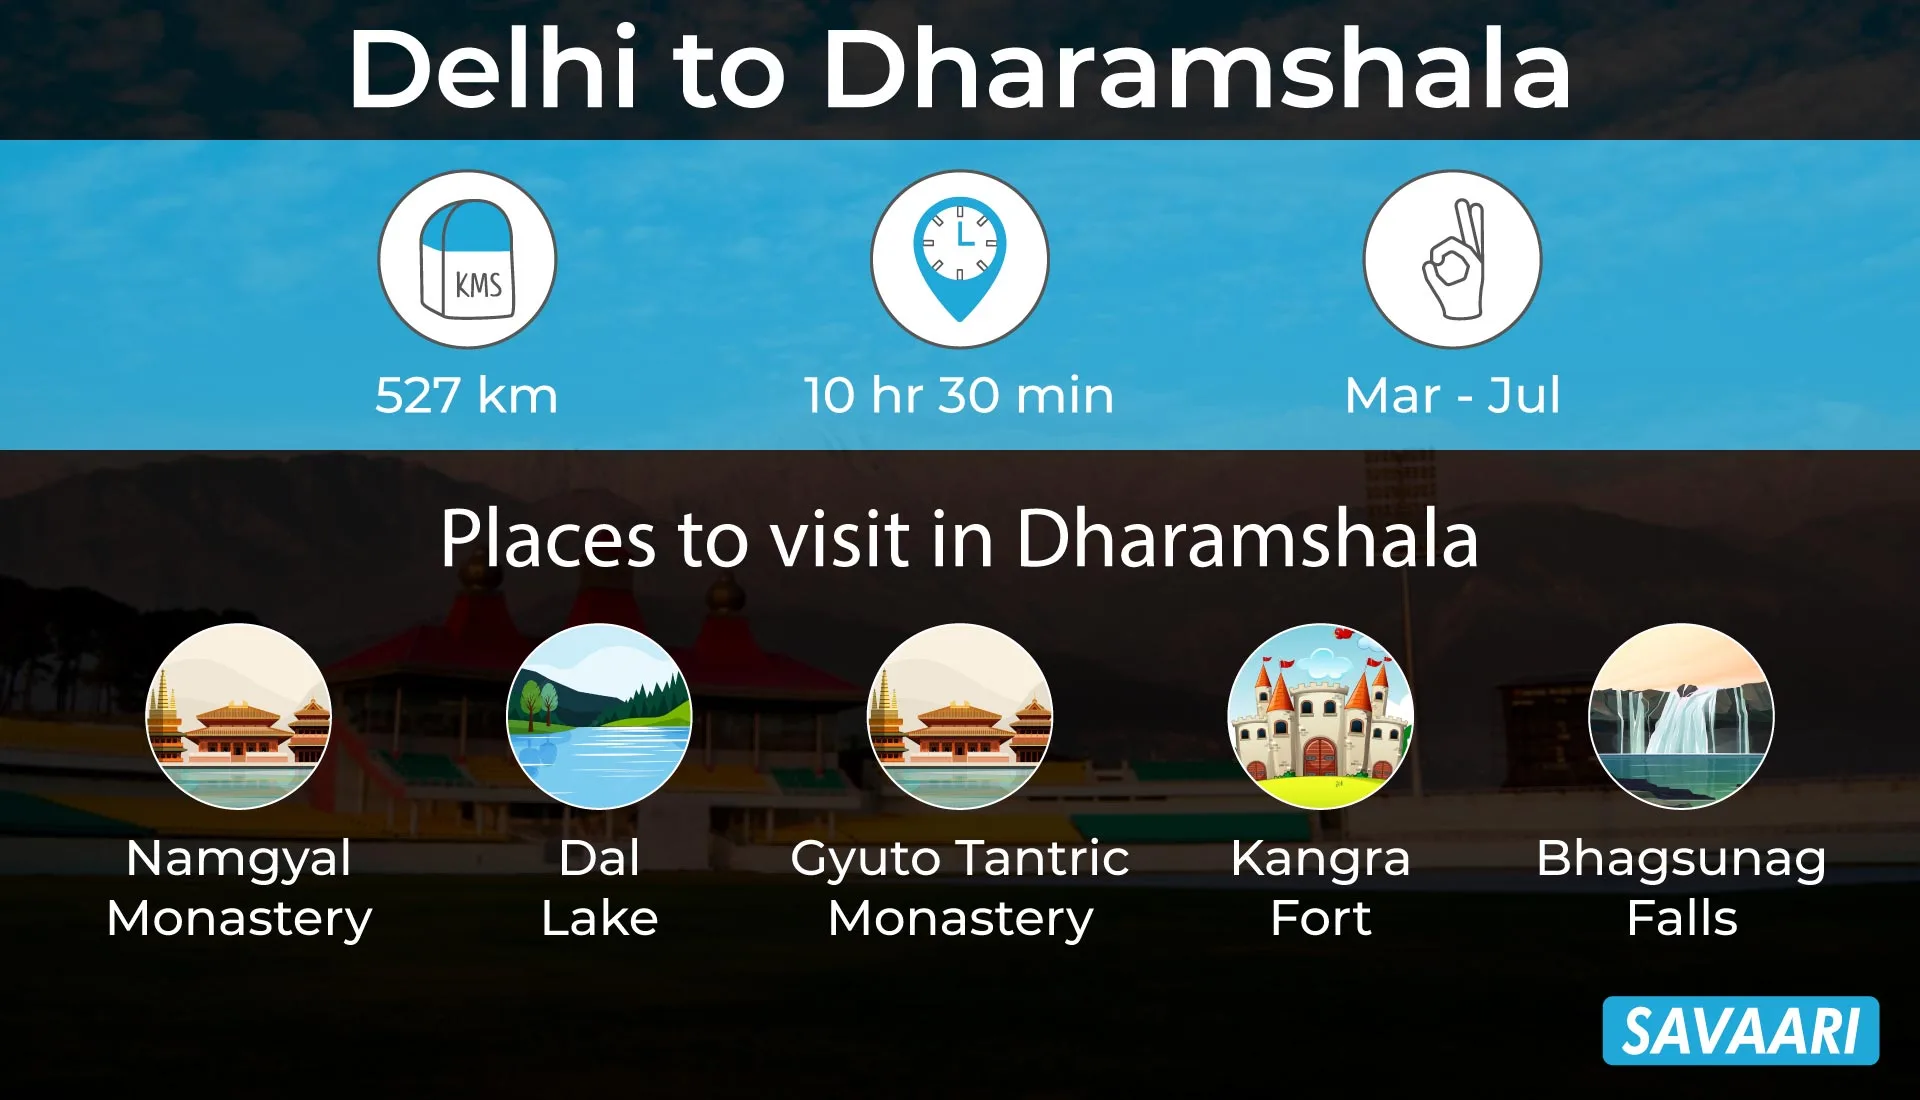 Delhi to Dharamshala a hill getaway